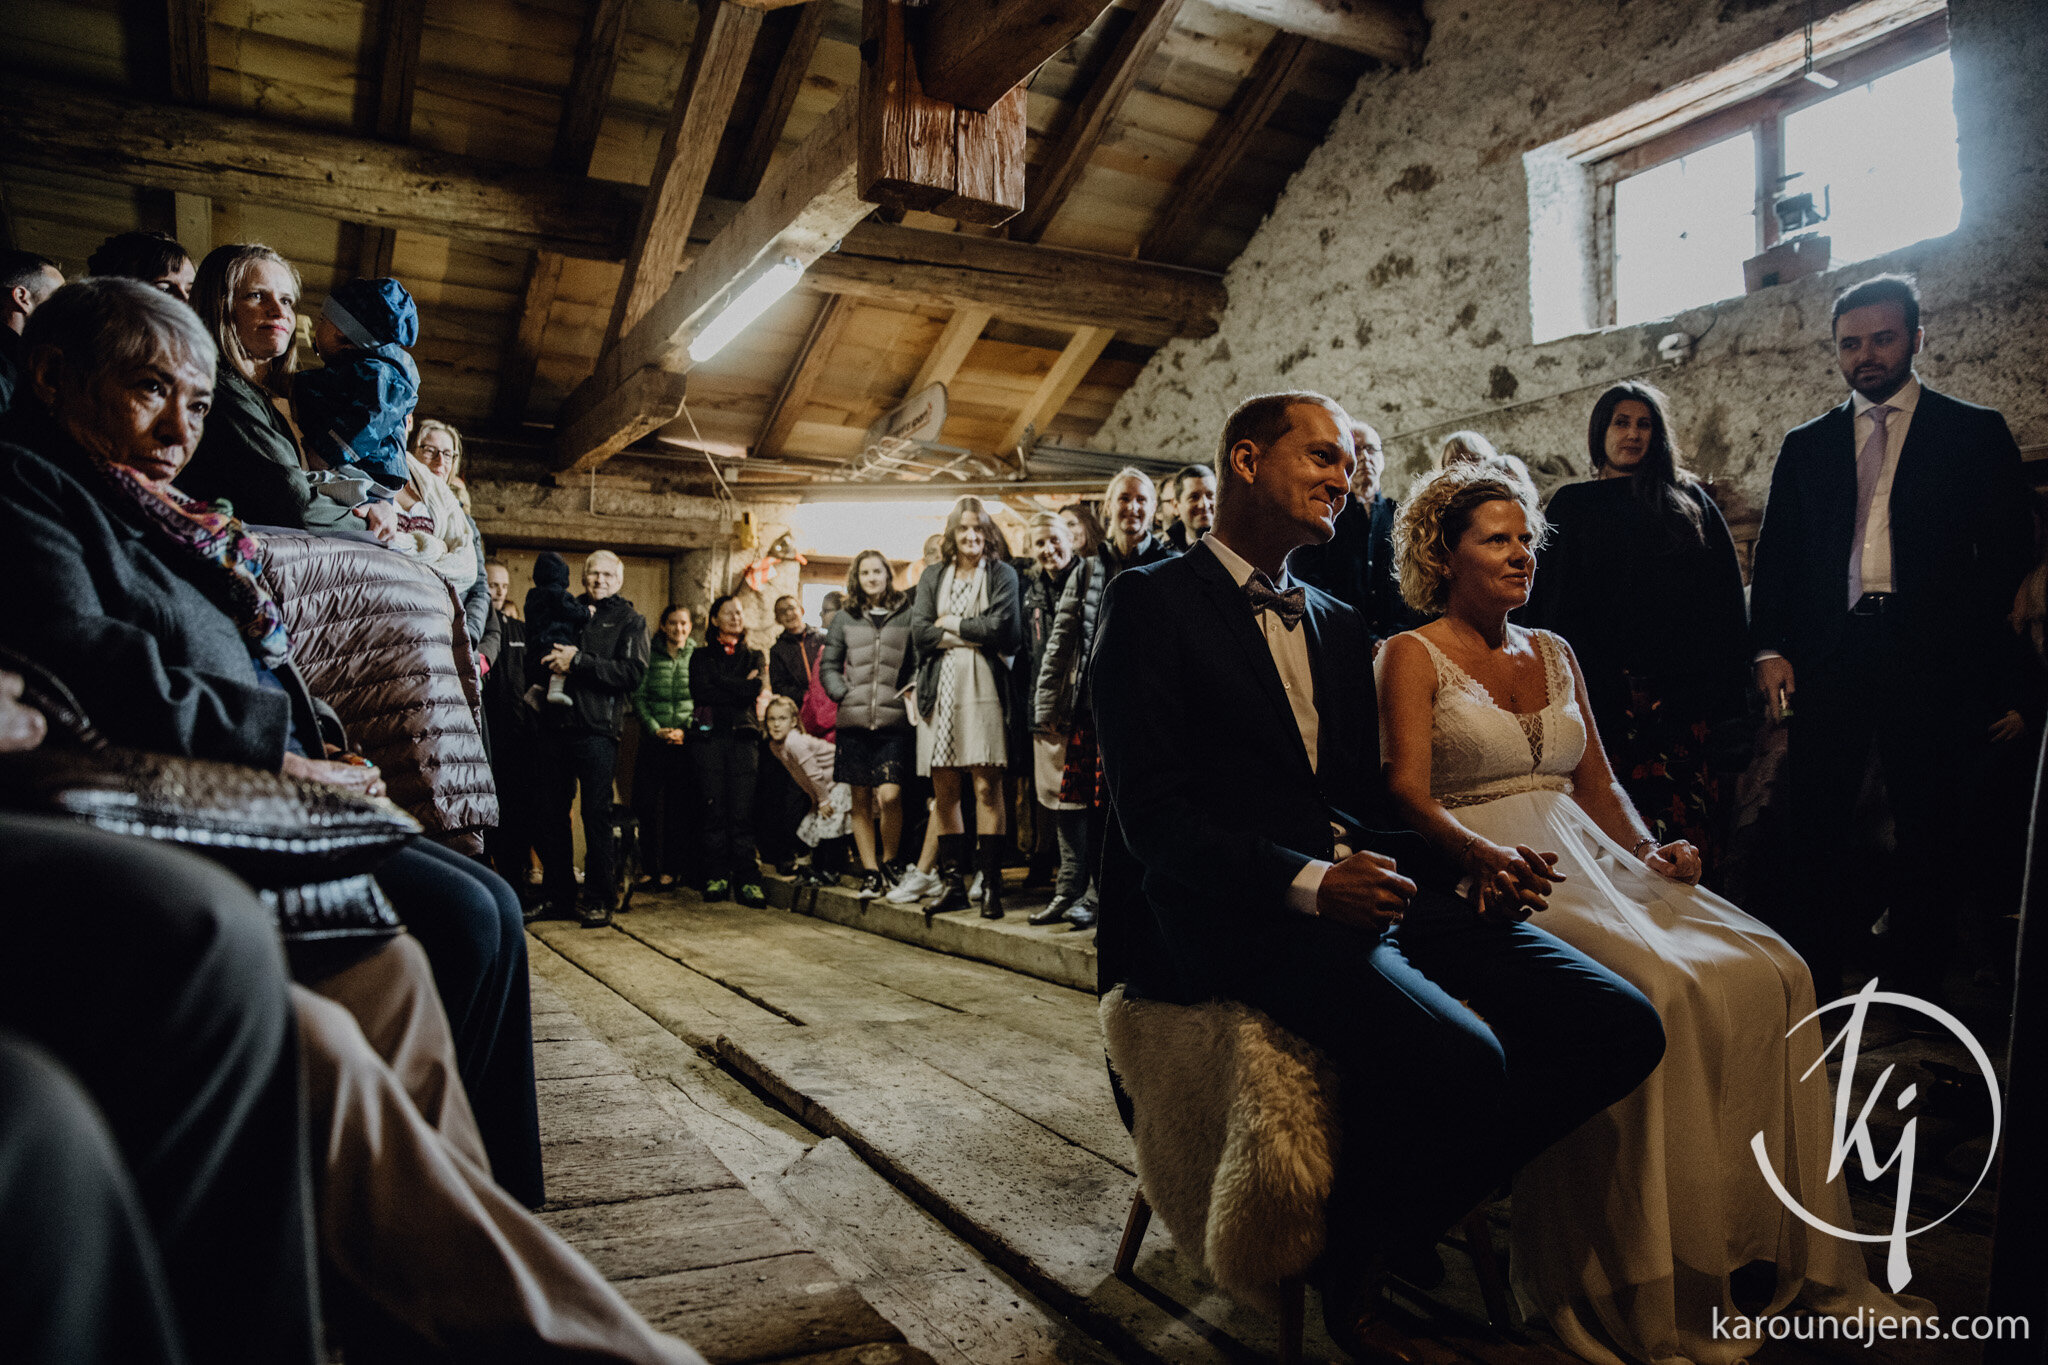 Heiraten-in-den-Bergen-Hochzeit-in-den-Bergen-hochzeitsfotograf-schweiz-karo-und-jens-jens-wenzel-karolin-schell_141_JW_43566.jpg